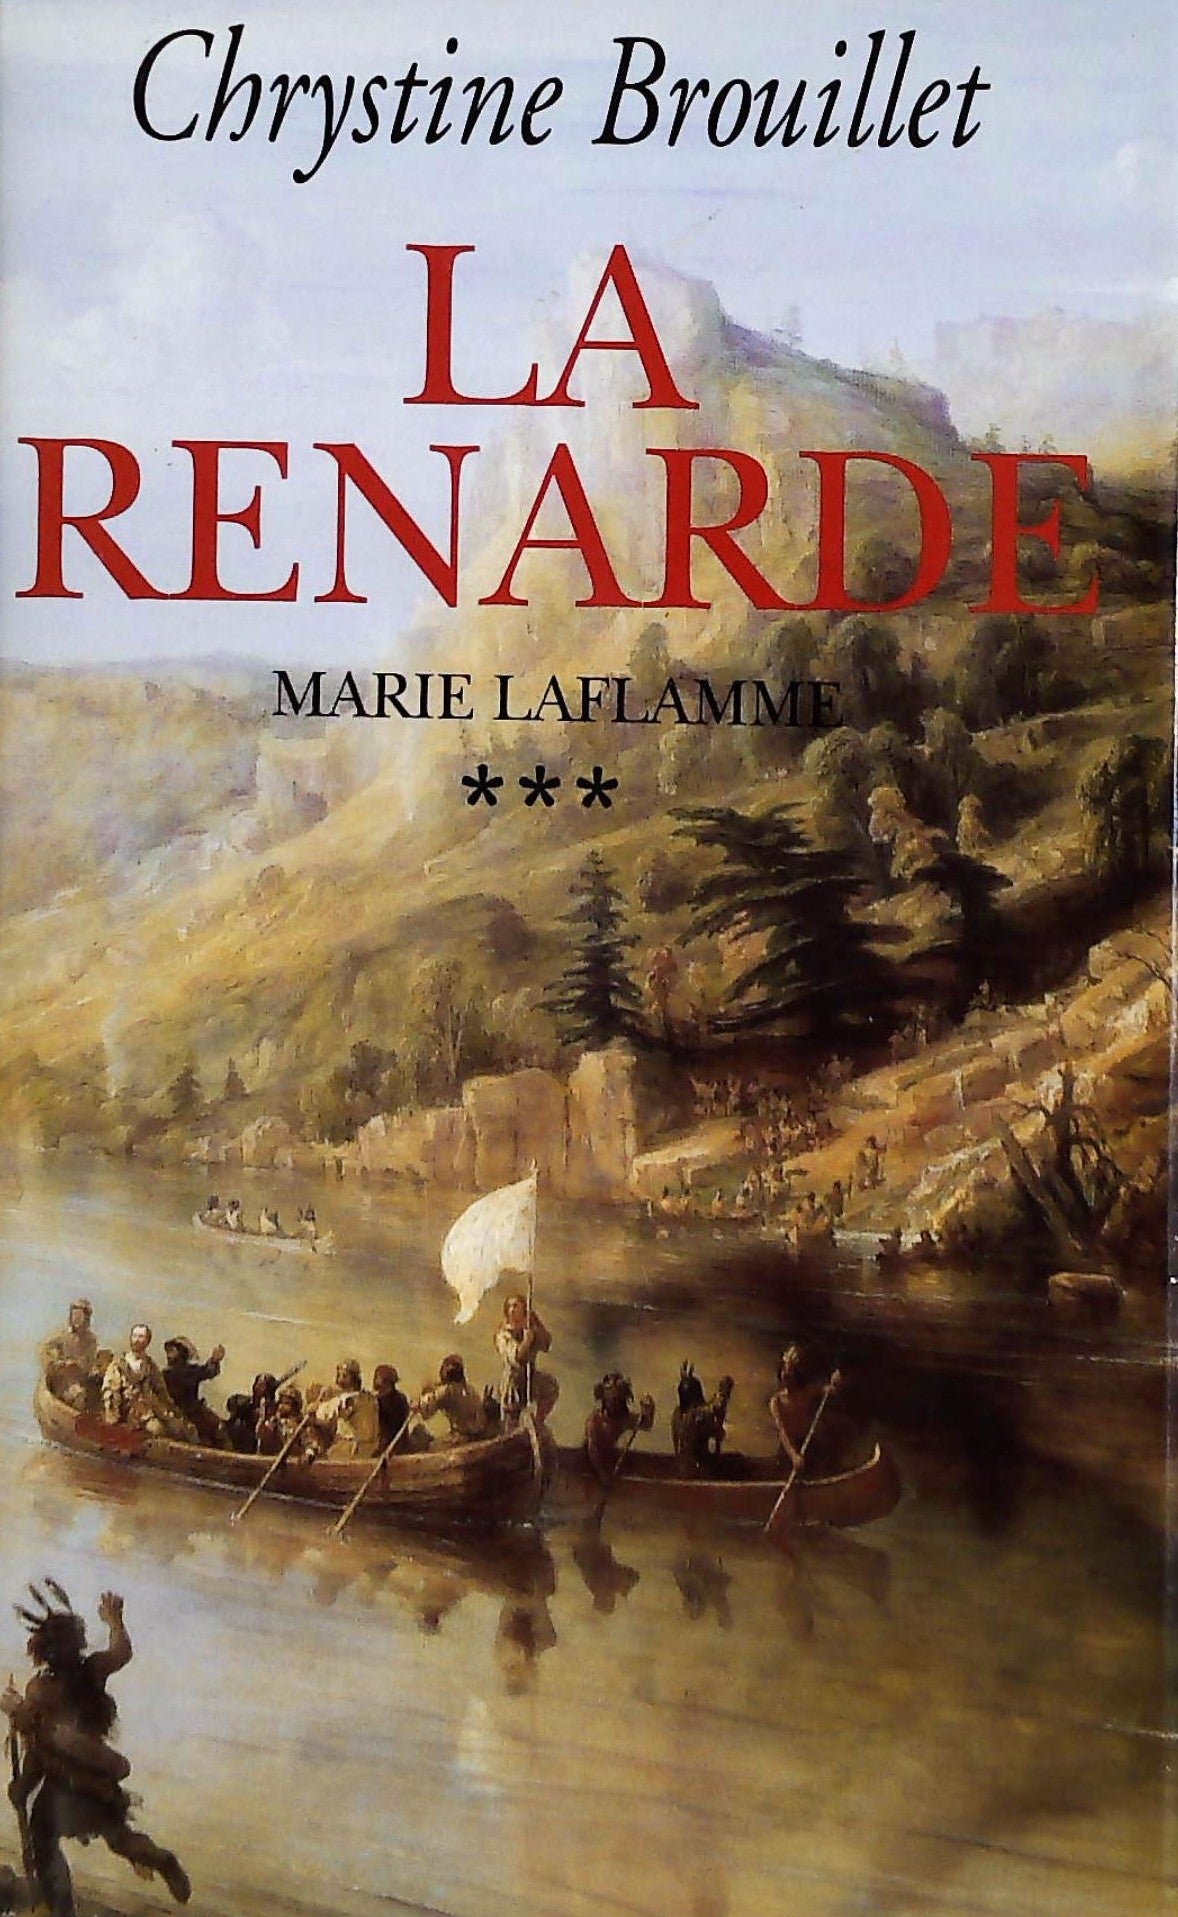 Livre ISBN 2894301073 Marie Laflamme # 3 : La renarde (Chrystine Brouillet)